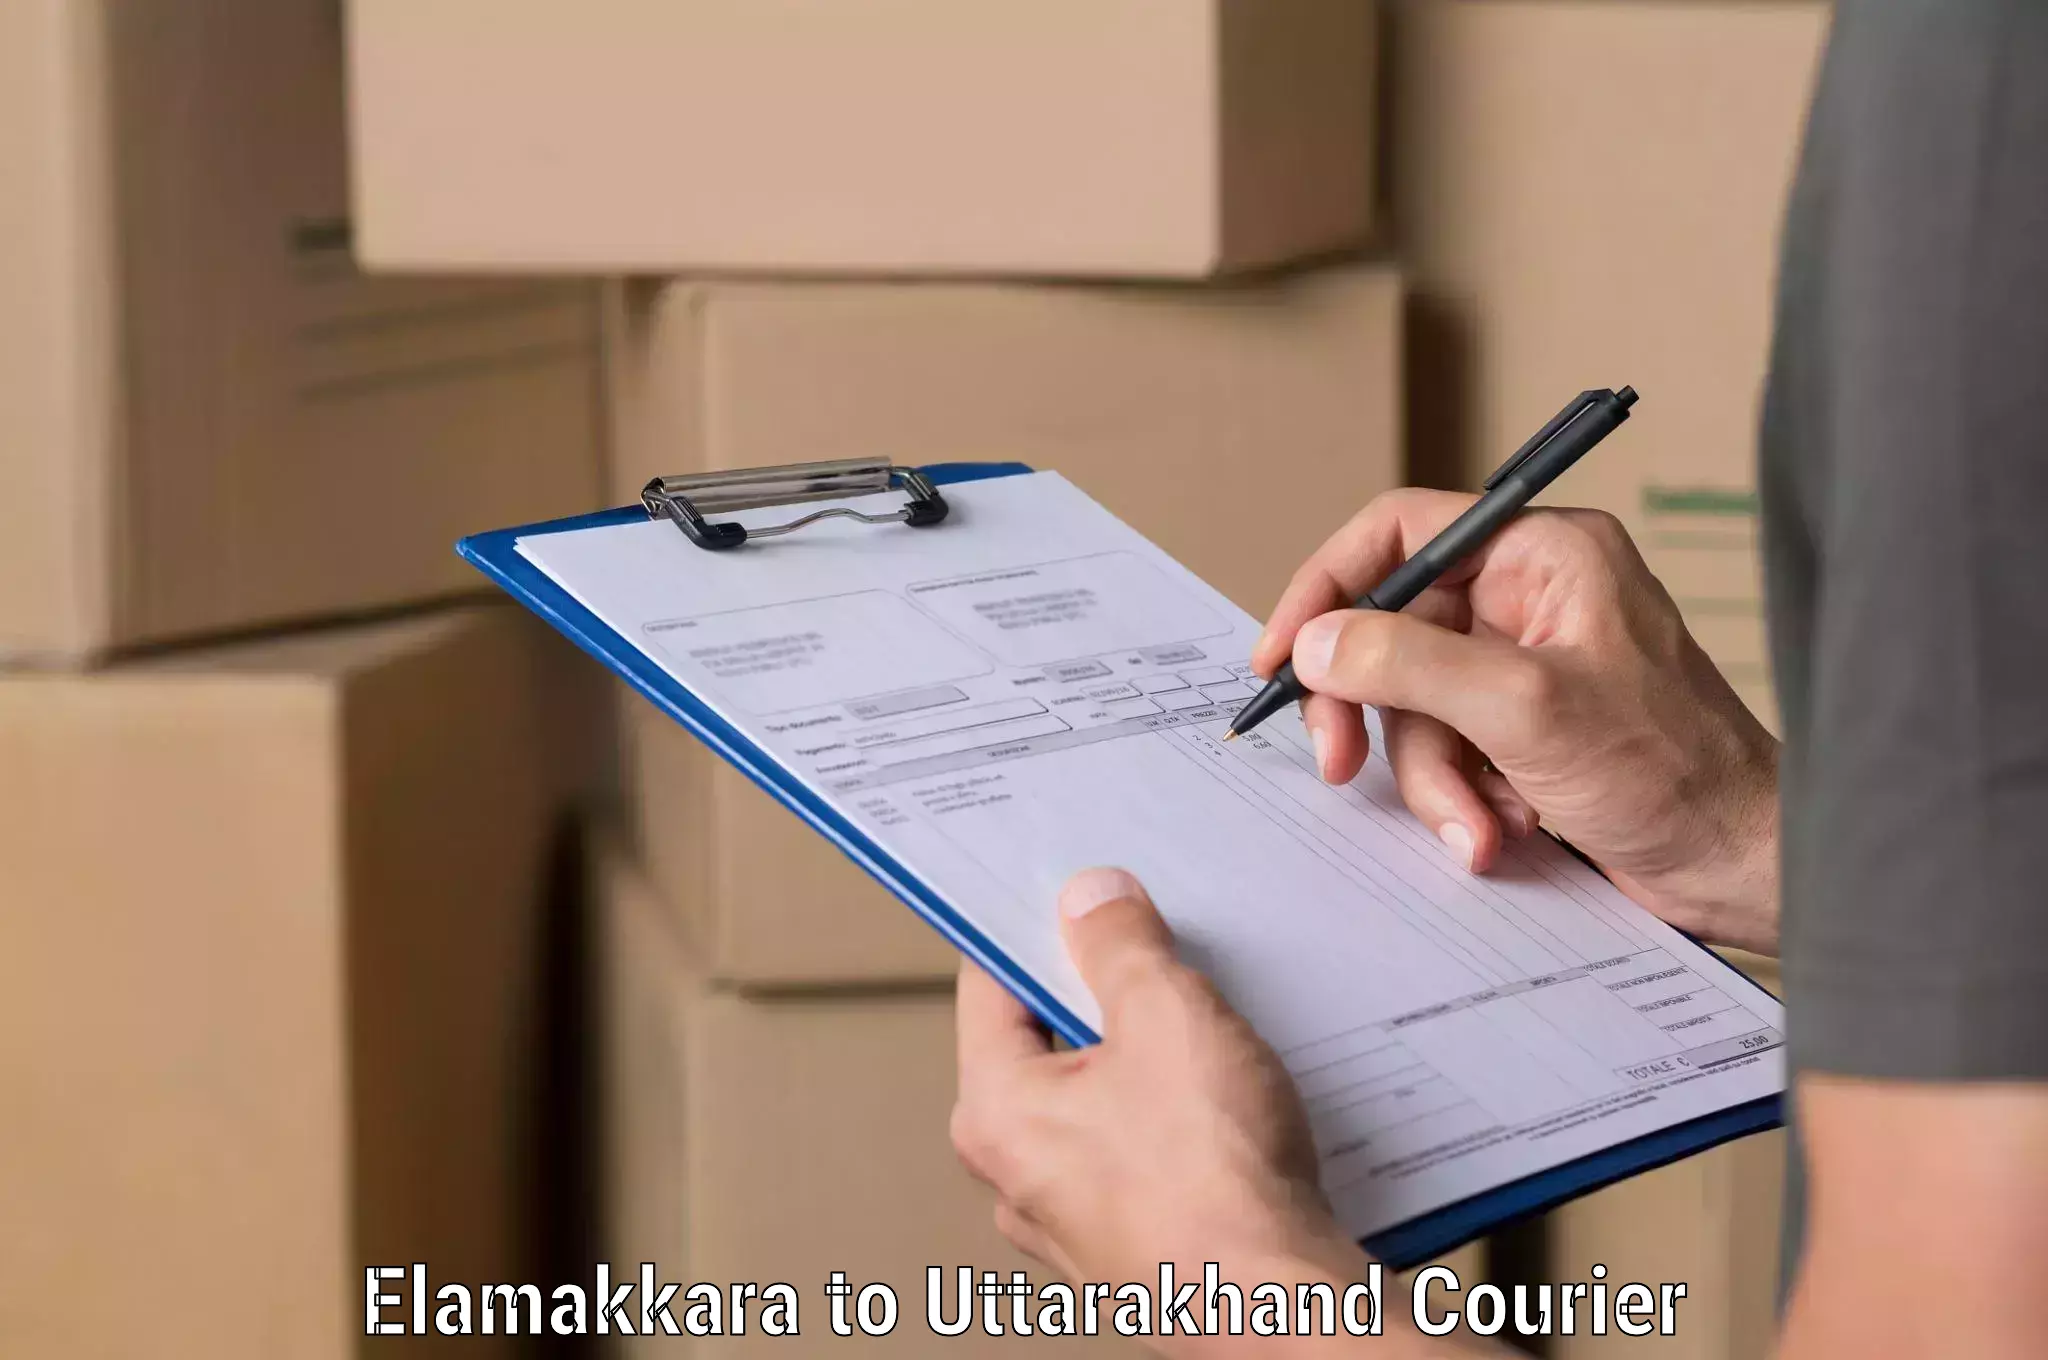 Full-service courier options Elamakkara to Uttarakhand